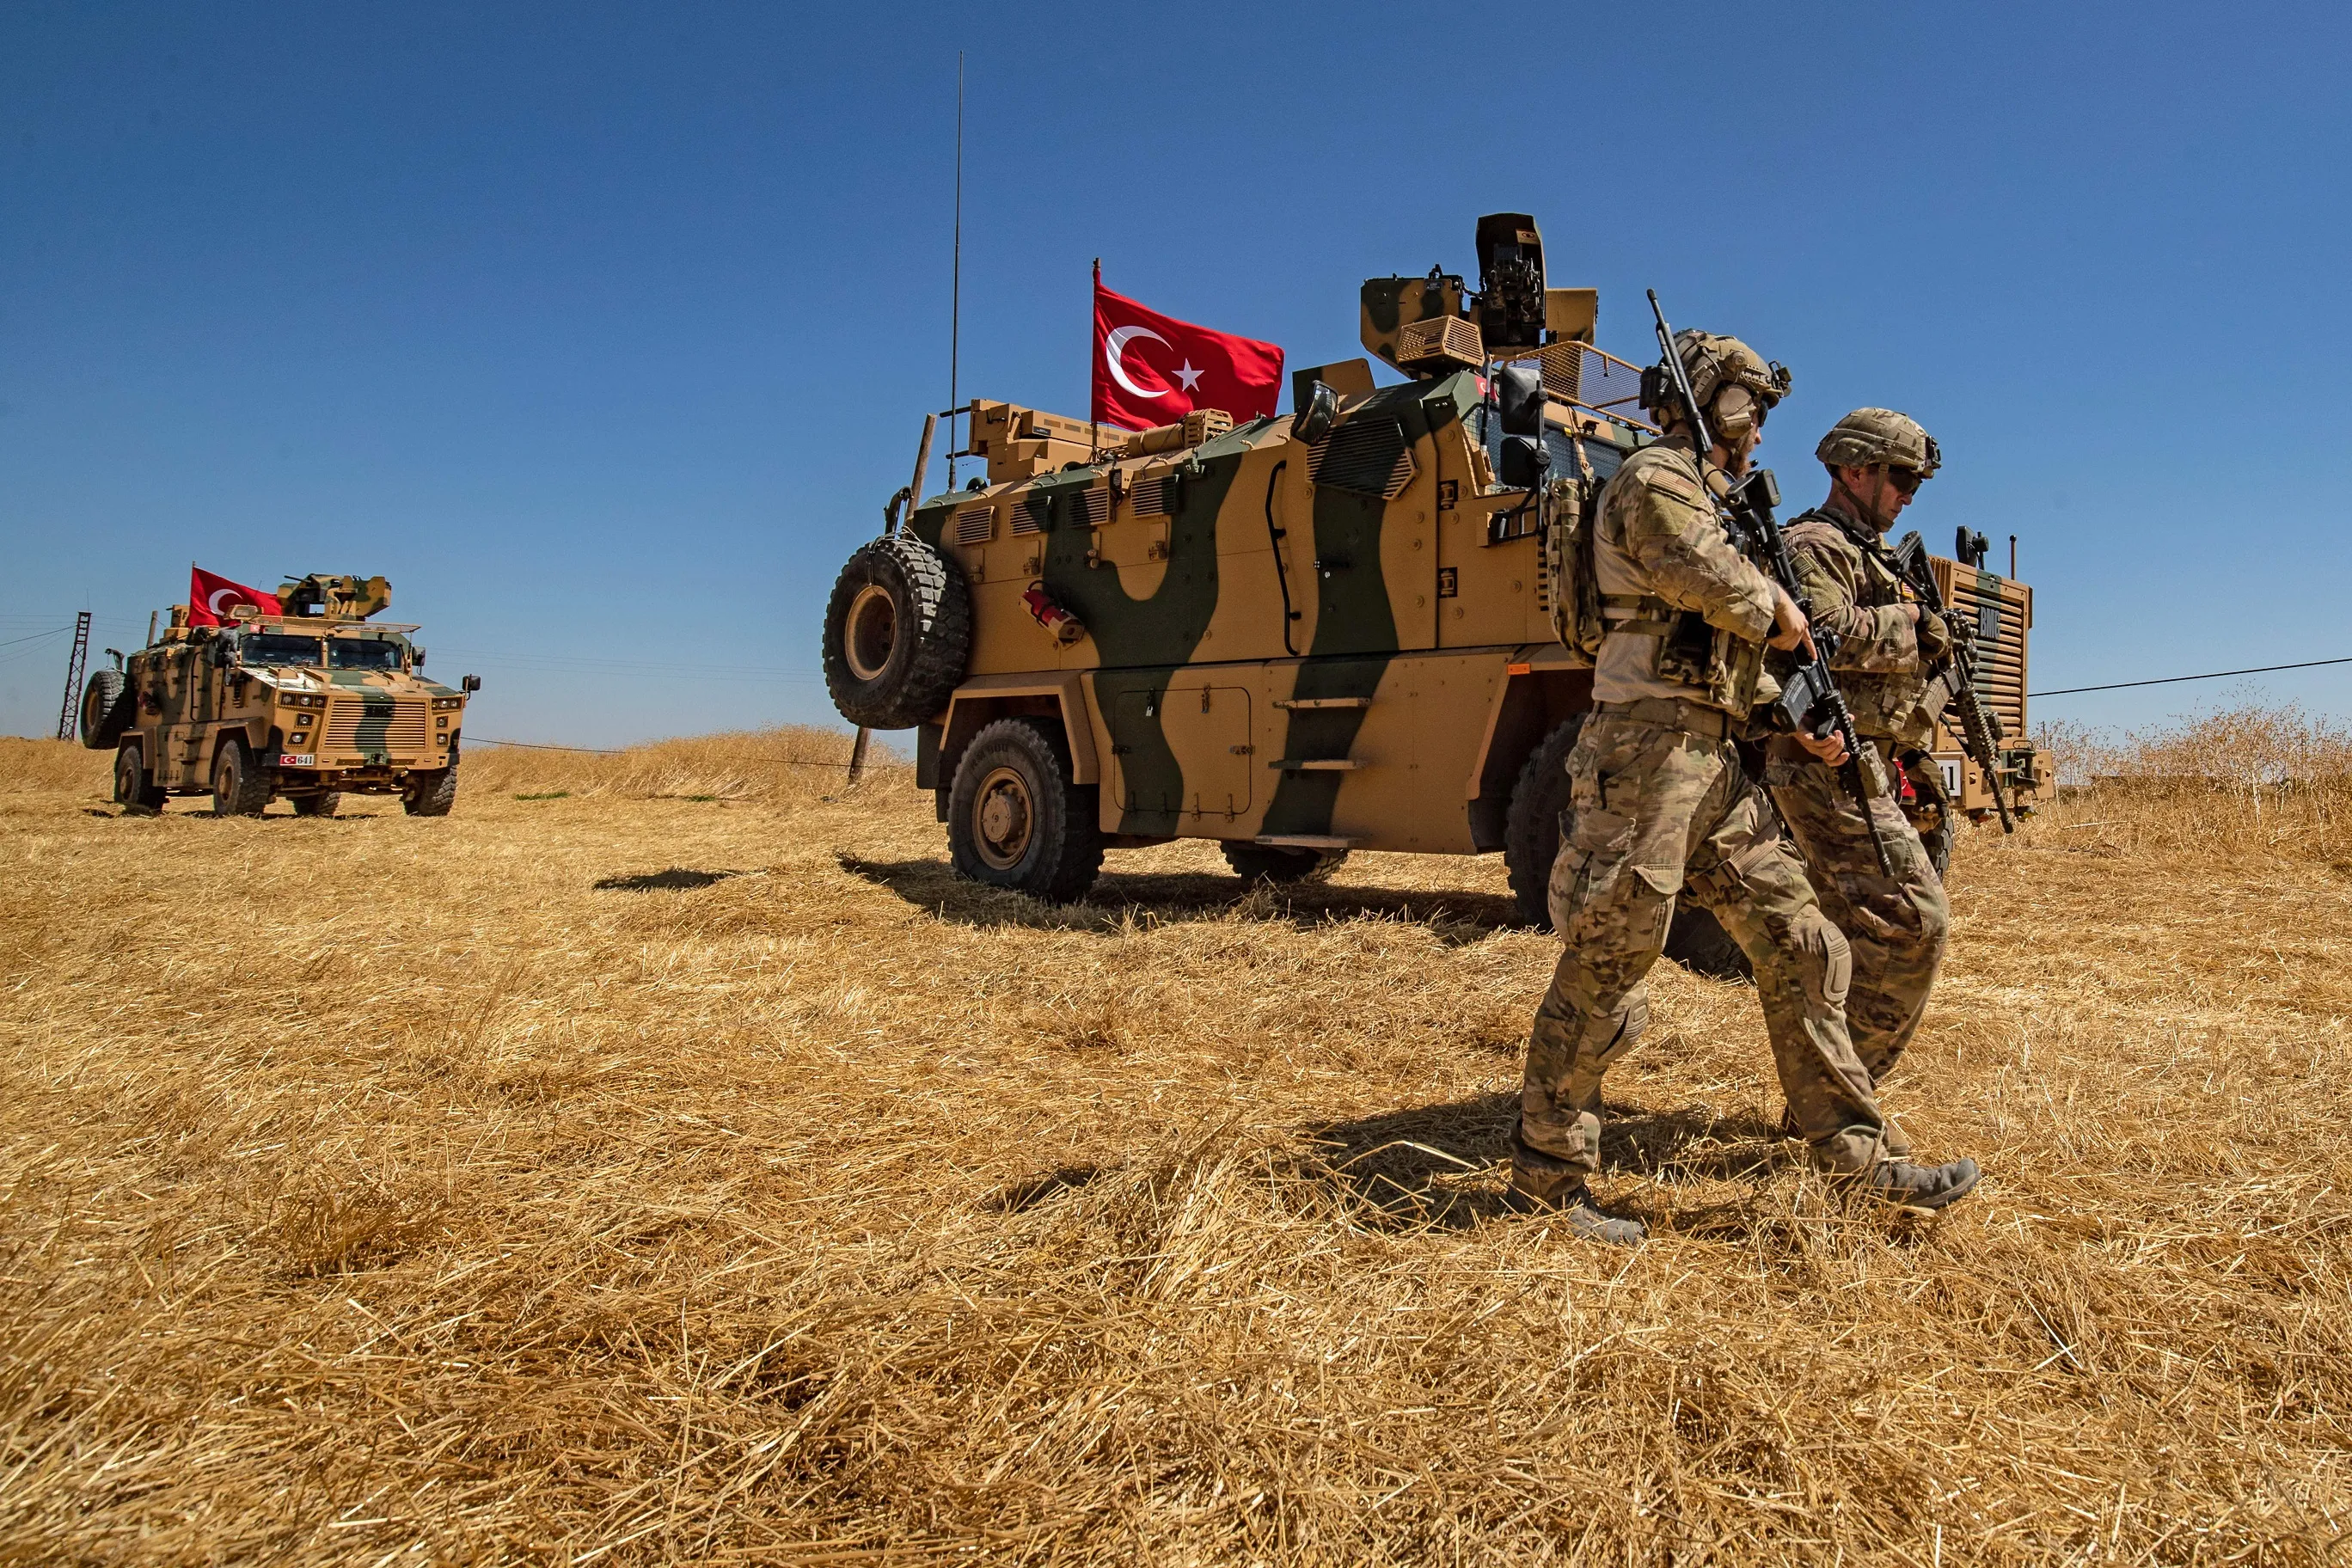 "الاستخبارات التركية" تُعلن تحييد 11 عنصراً من "ب ك ك" في منبج شرقي سوريا